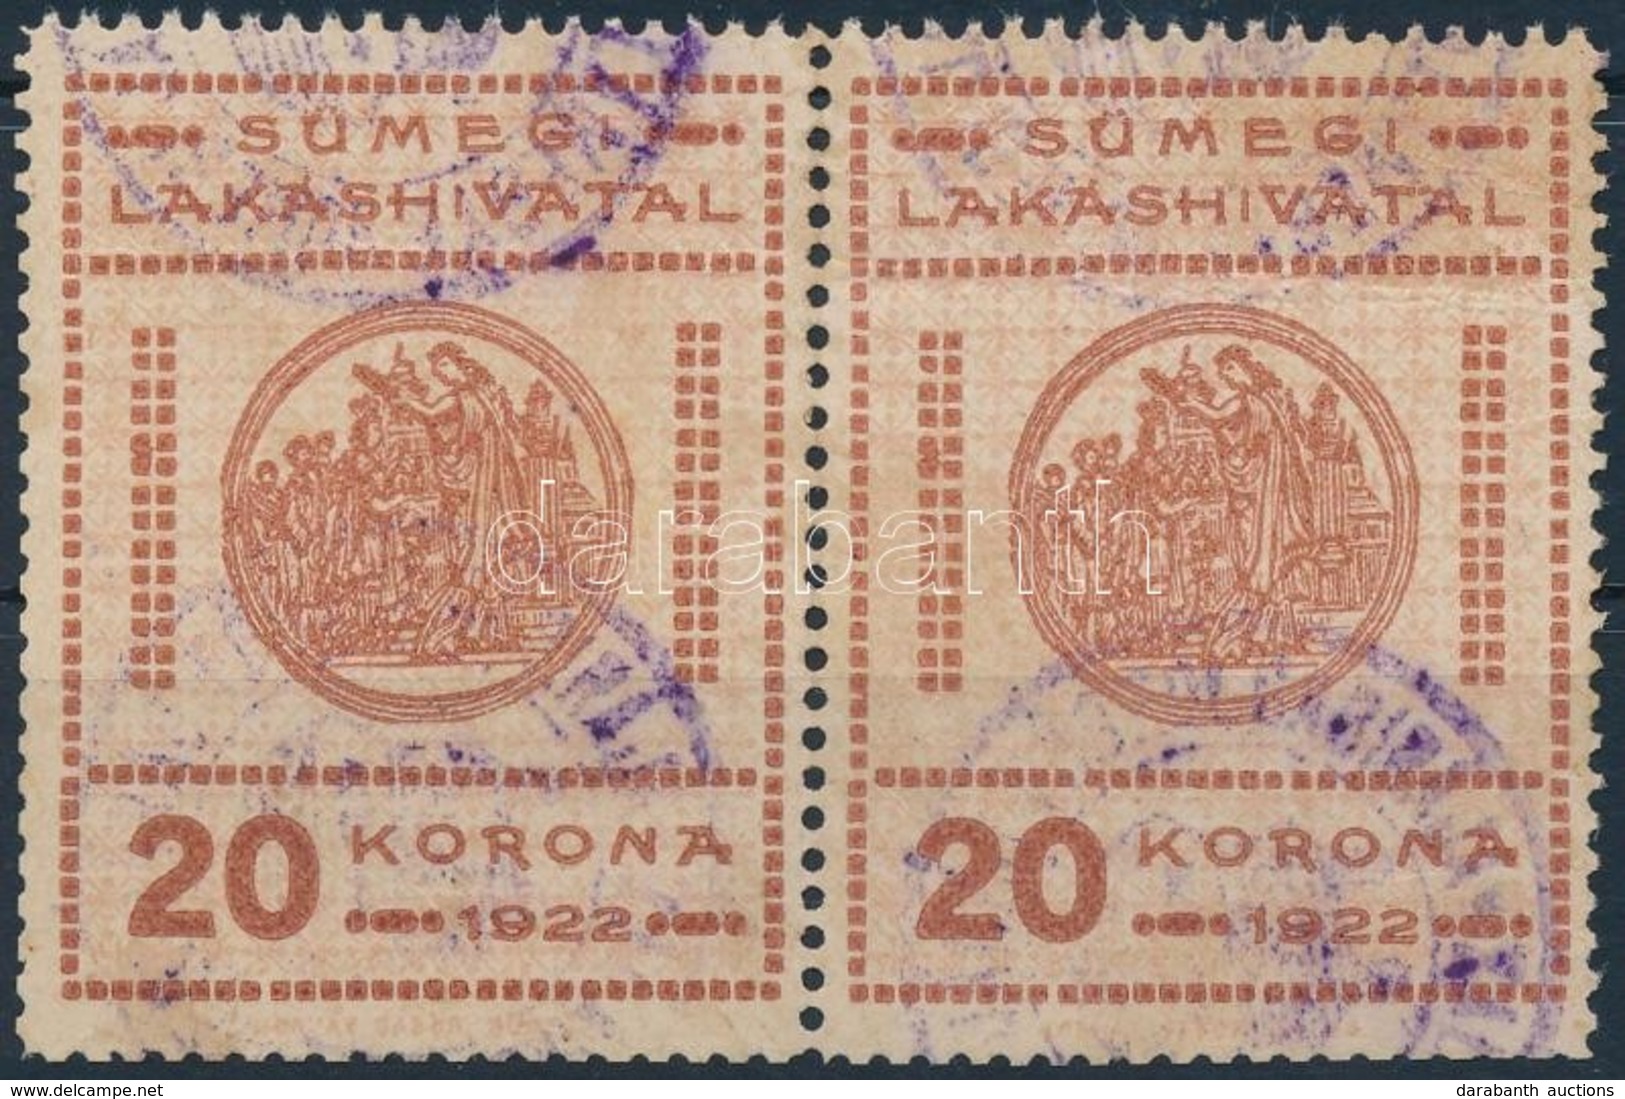 1922 Sümeg Városi Lakáshivatali Bélyeg 20K Pár (24.000) - Zonder Classificatie